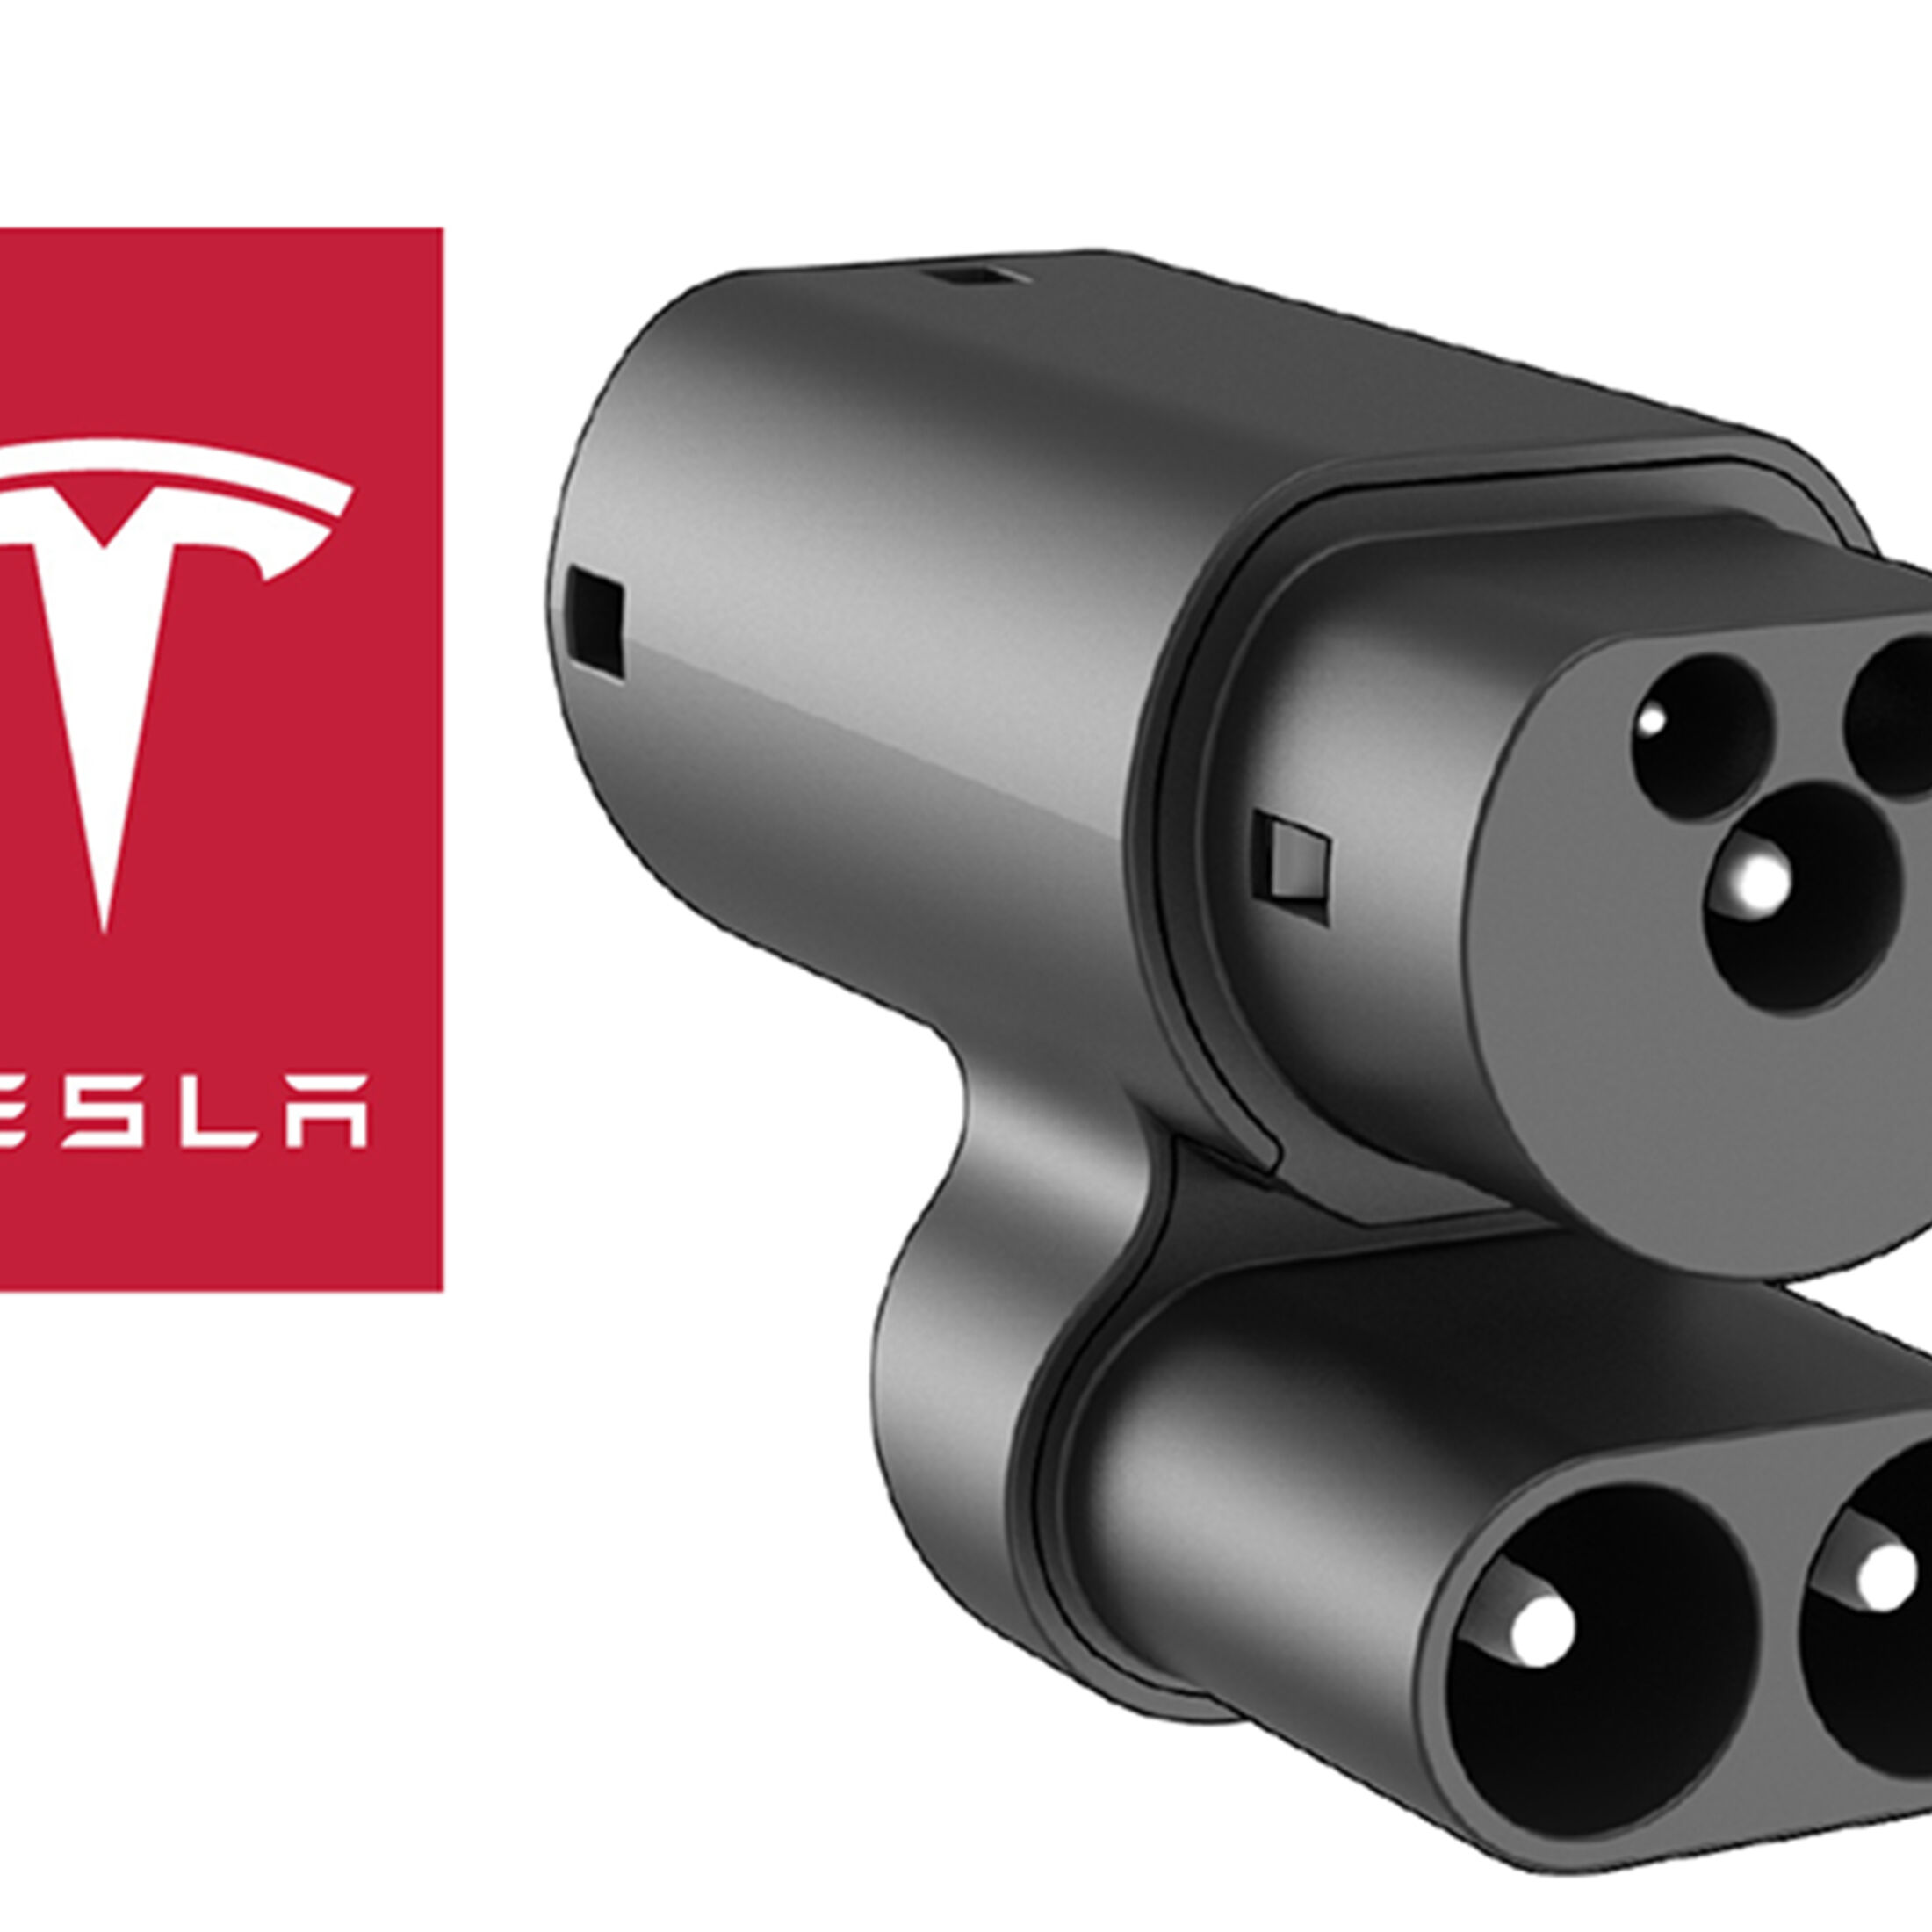 Tesla CCS-Upgrade für Model S und X: Nachrüstung für 229 Euro